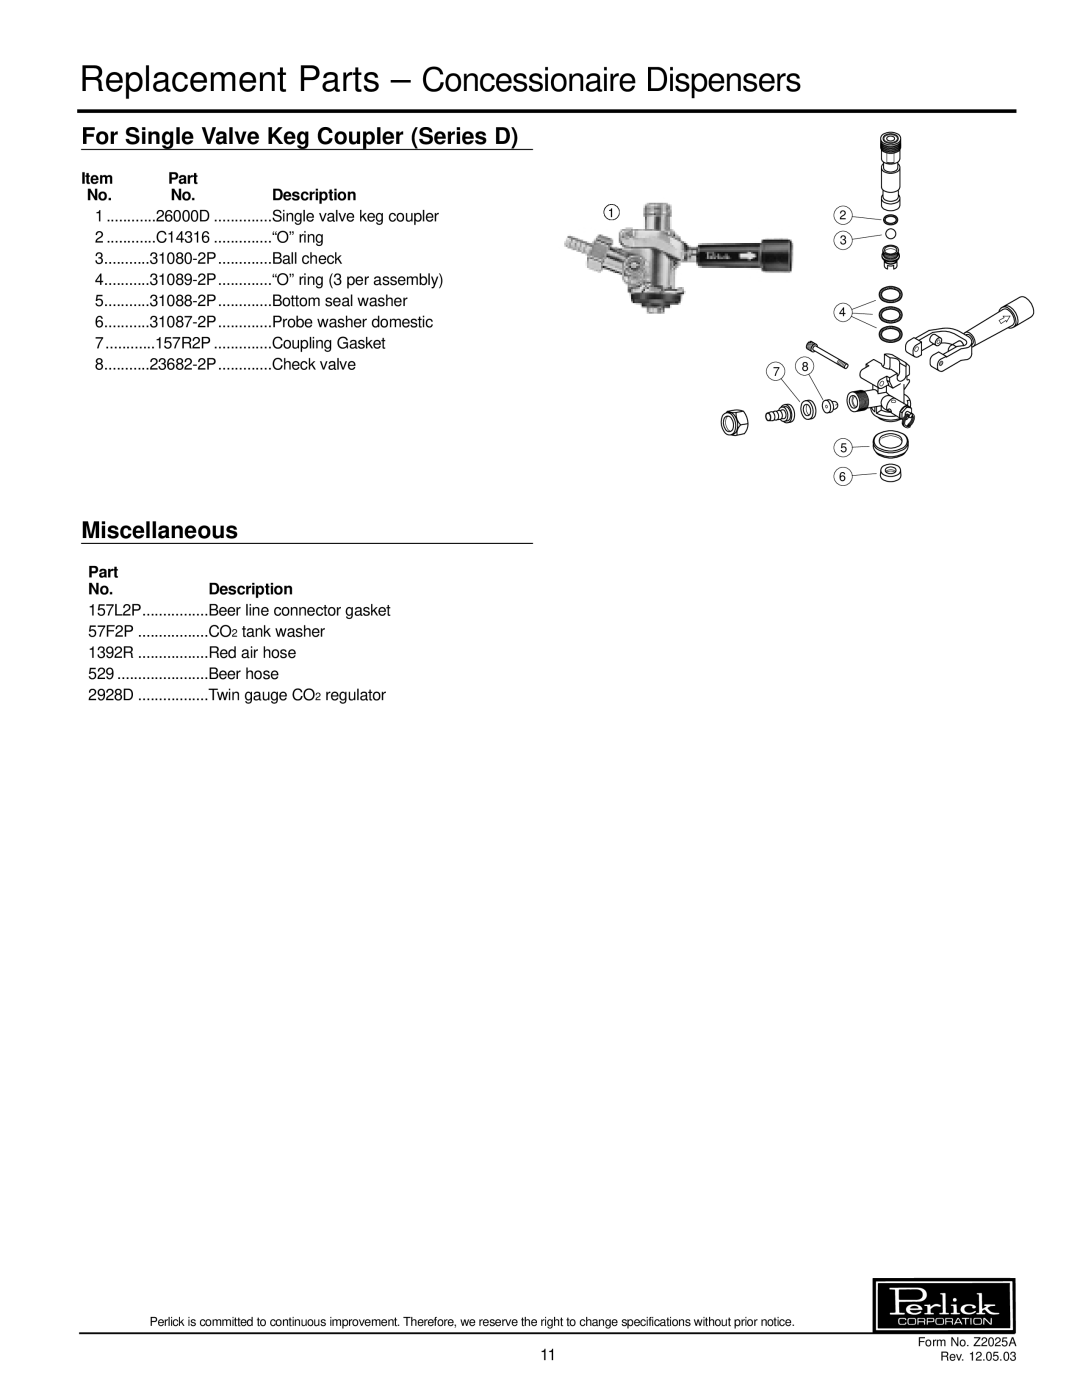 Perlick DS Series specifications Replacement Parts - Concessionaire Dispensers, Description 